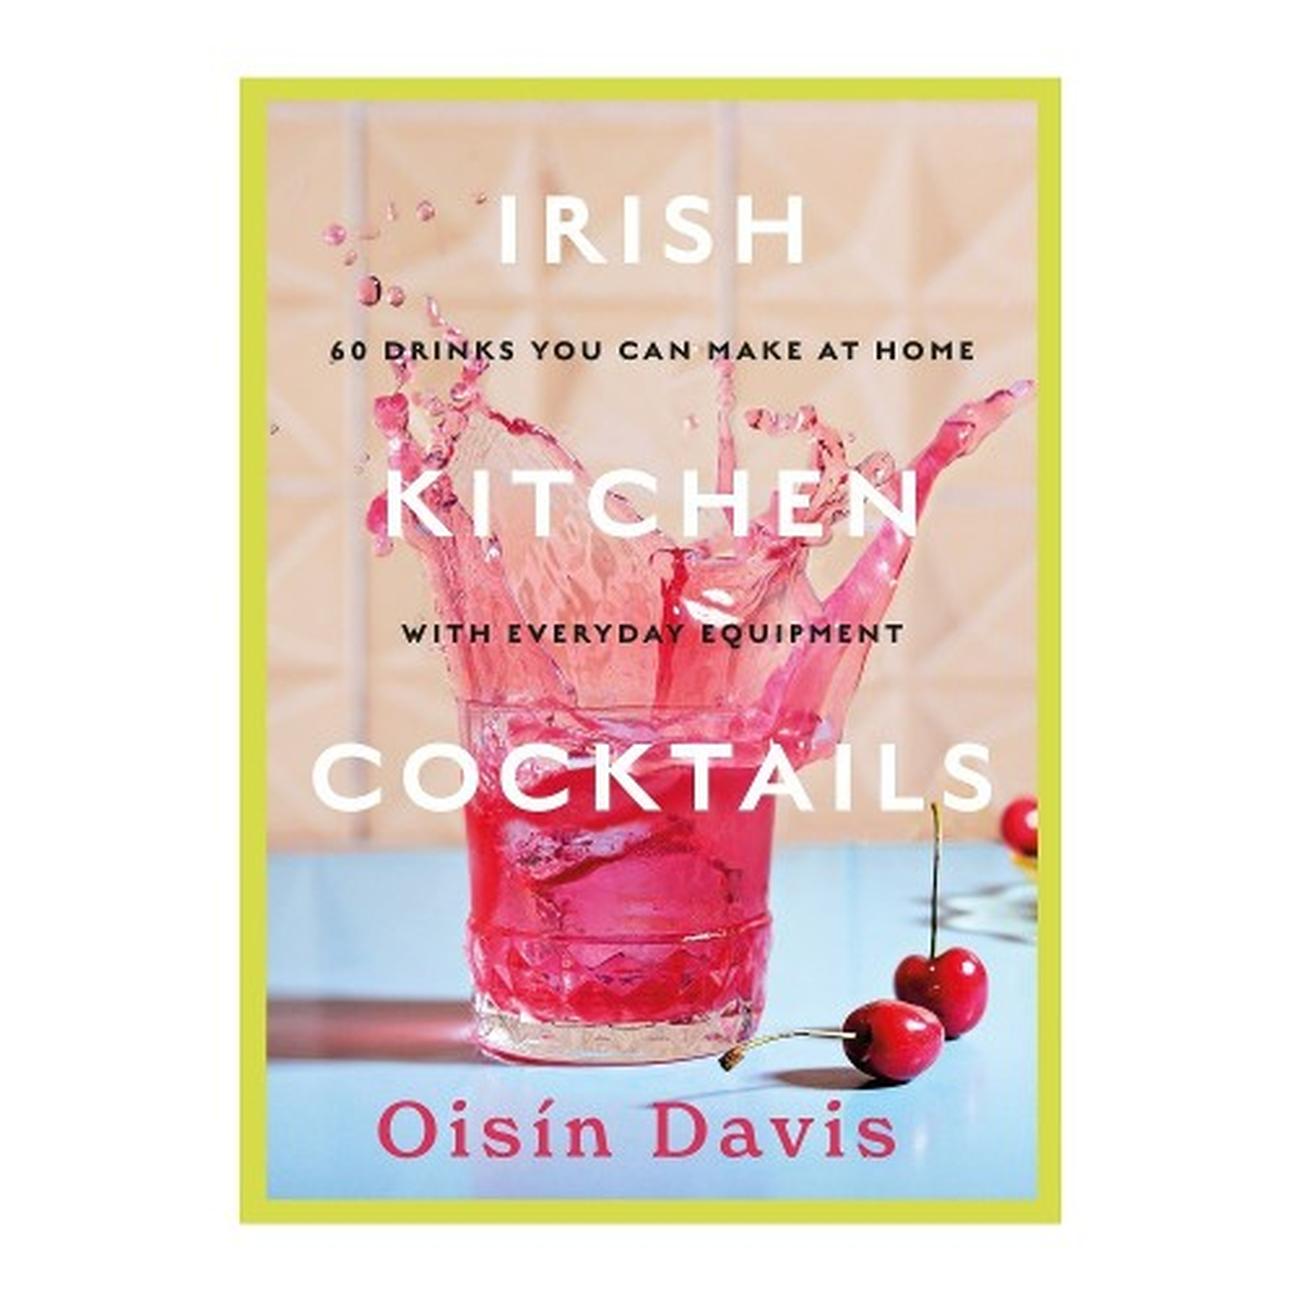 irish-kitchen-cocktails-by-oisin-davis - Irish Kitchen Cocktails by Oisin Davis 